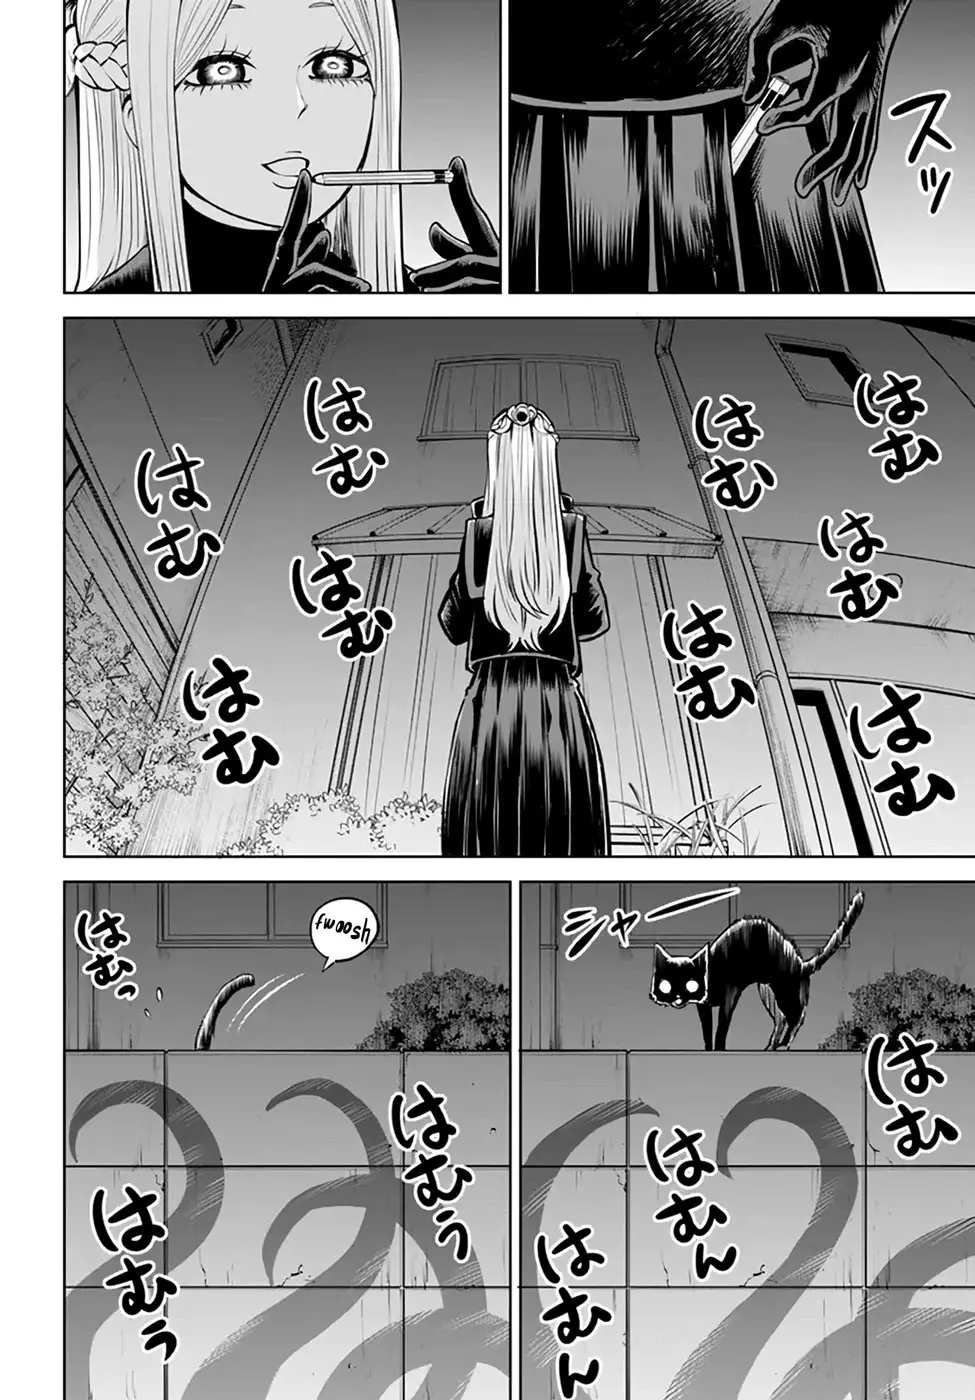 Mieruko-chan - 42 page 10-8fec5383